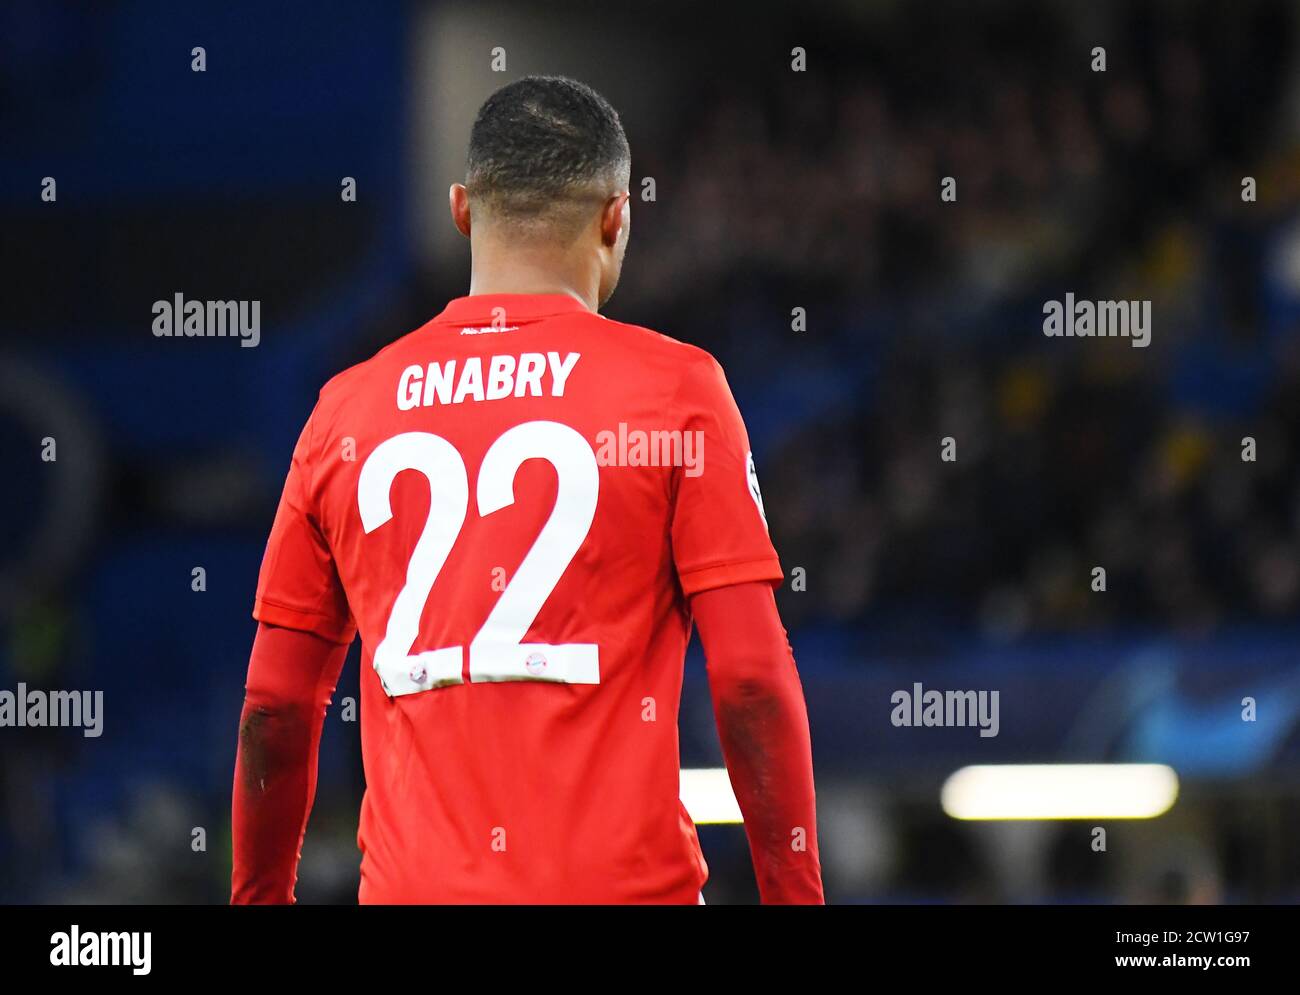 LONDON, ENGLAND - 26. FEBRUAR 2020: Serge Gnabry von Bayern im Rahmen der 2019/20 UEFA Champions League Runde 16 zwischen dem FC Chelsea und Bayern München auf der Stamford Bridge. Stockfoto